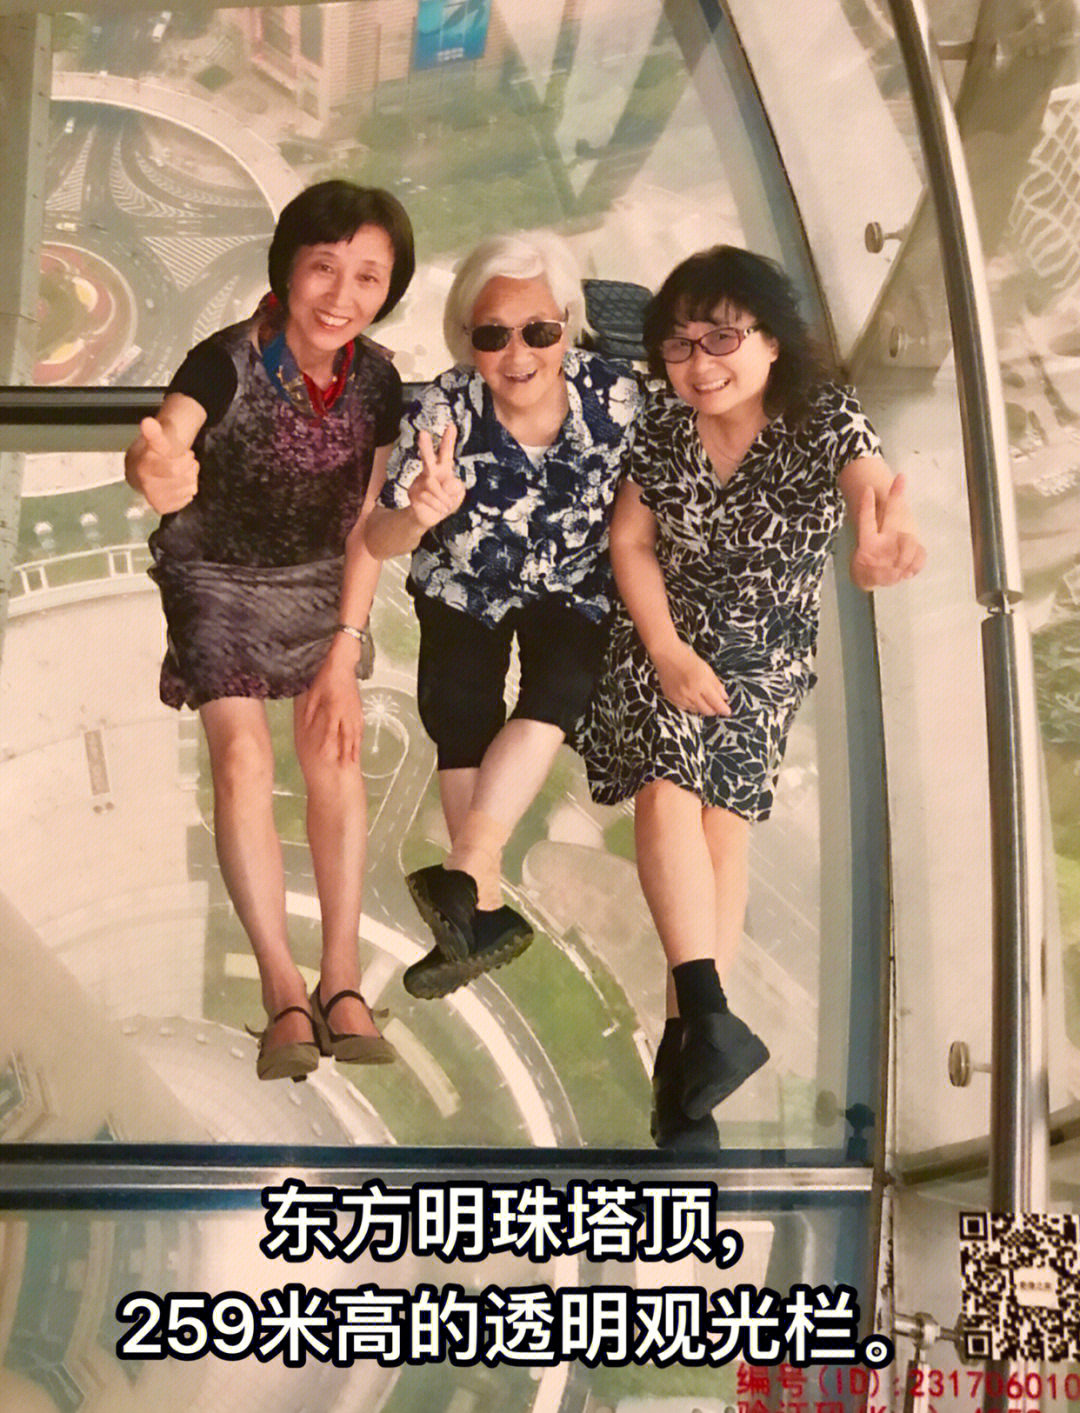 95岁的老顽童登上东方明珠塔